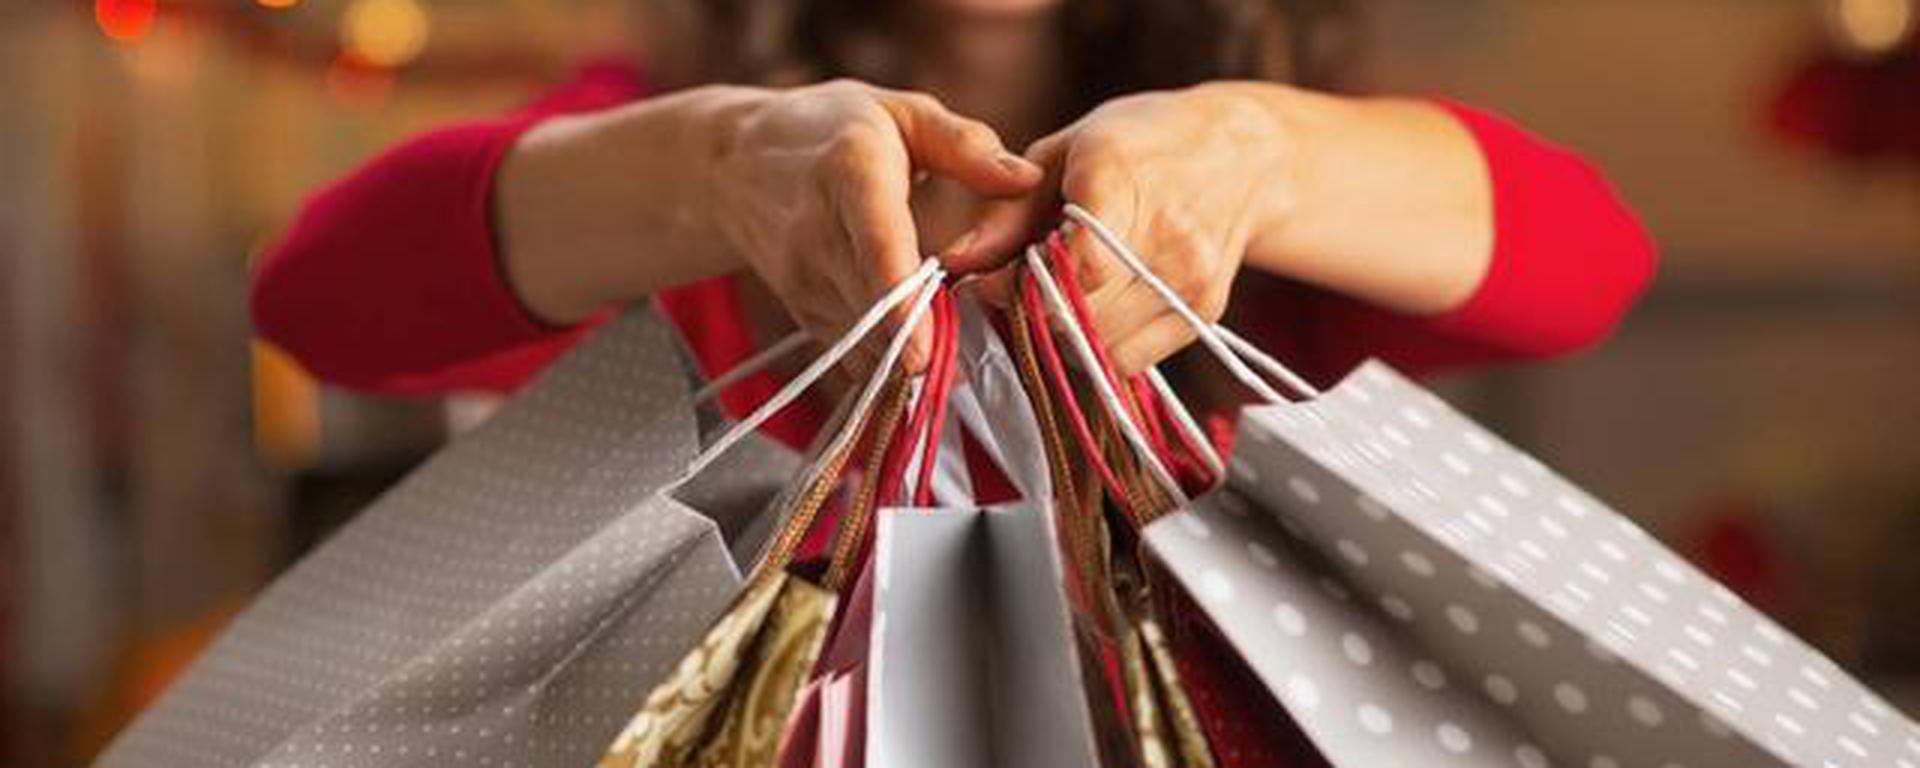 Aguinaldo de Navidad: empresas vienen solicitando que sus tarjetas de regalo tengan “máxima aceptación”